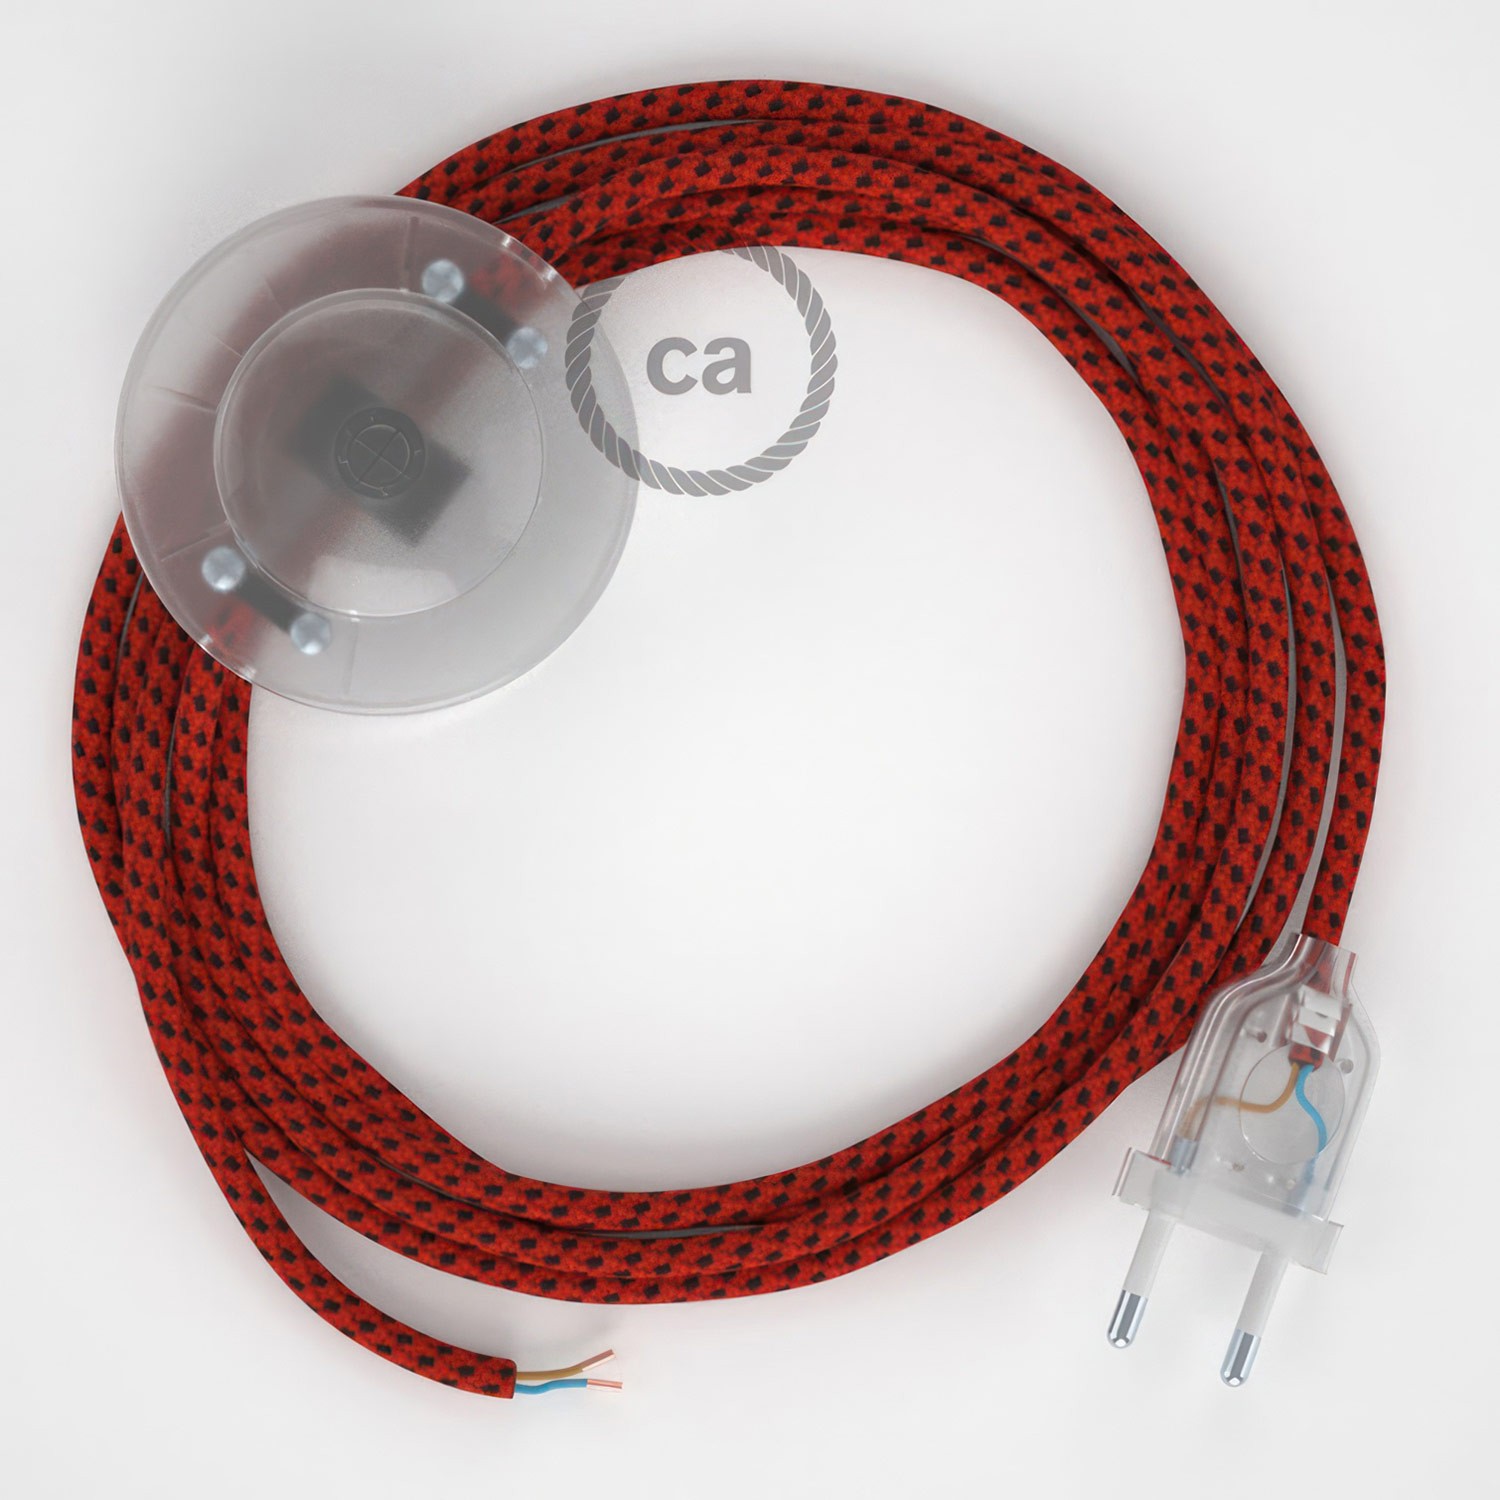 Cableado para lámpara de pie, cable RT94 Efecto Seda Red Devil 3 m. Elige tu el color de la clavija y del interruptor!